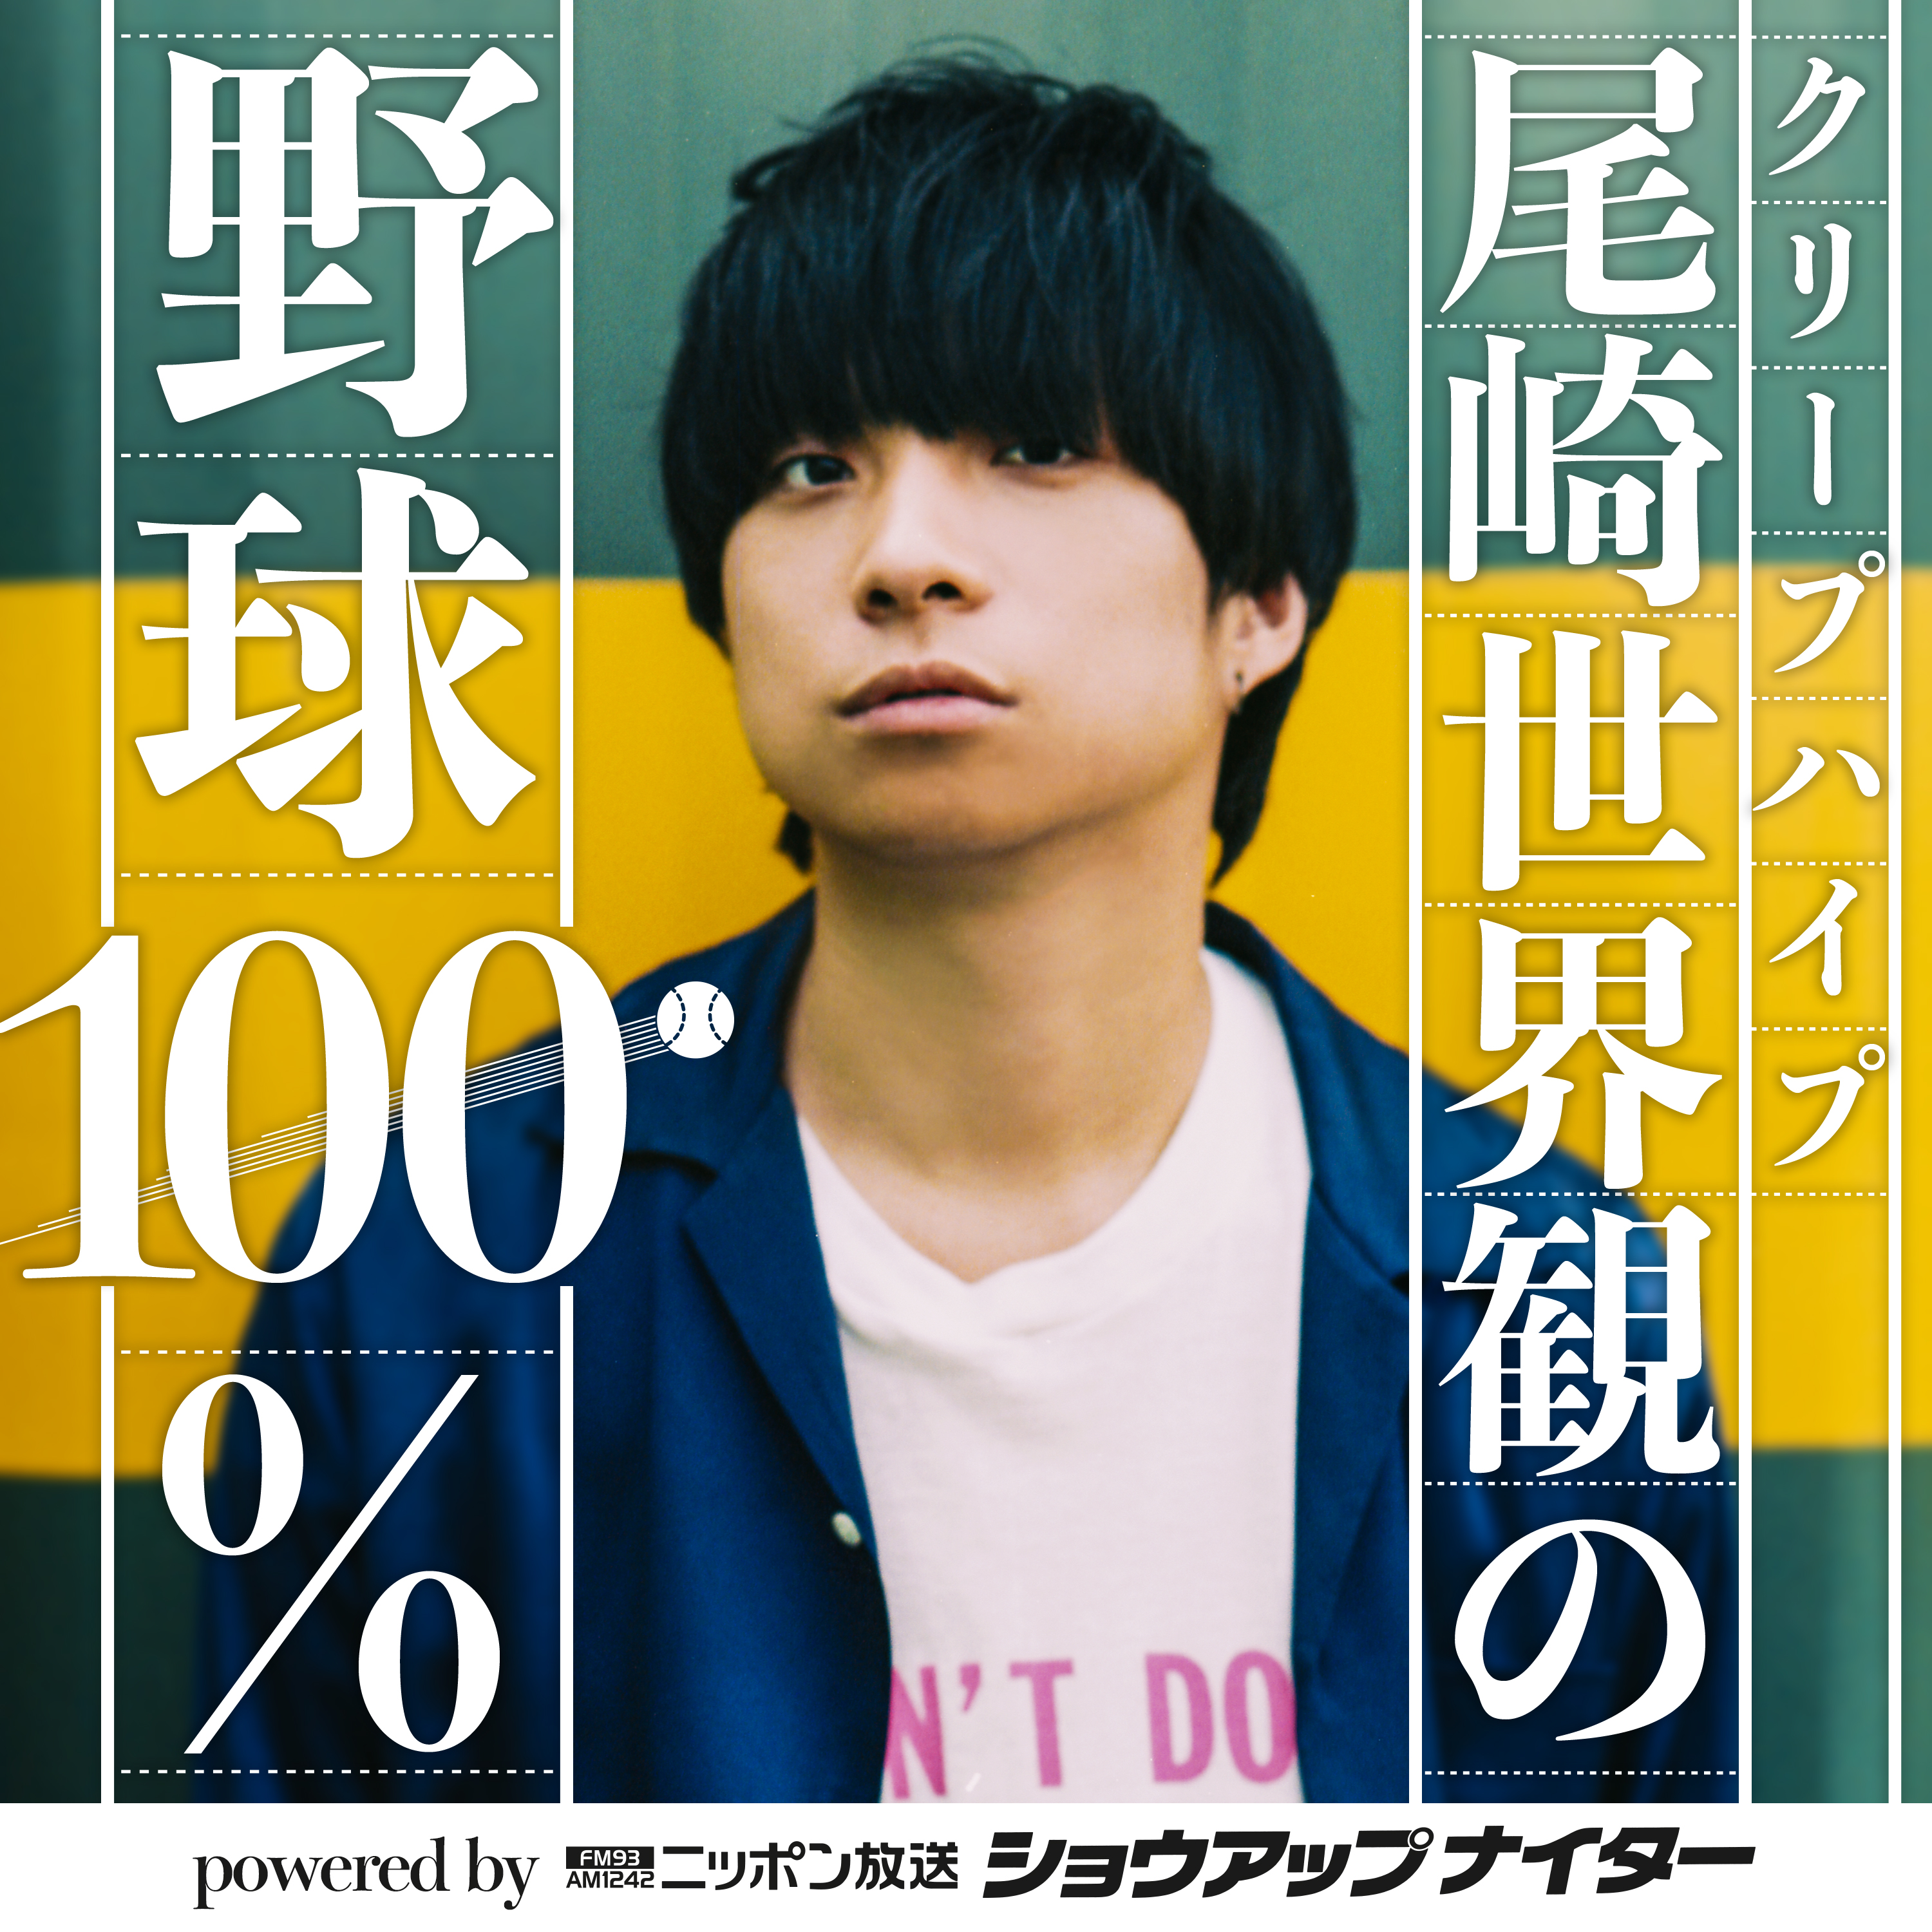 【第2回】クリープハイプ尾崎世界観の野球100% powered by ニッポン放送ショウアップナイター シーズン1